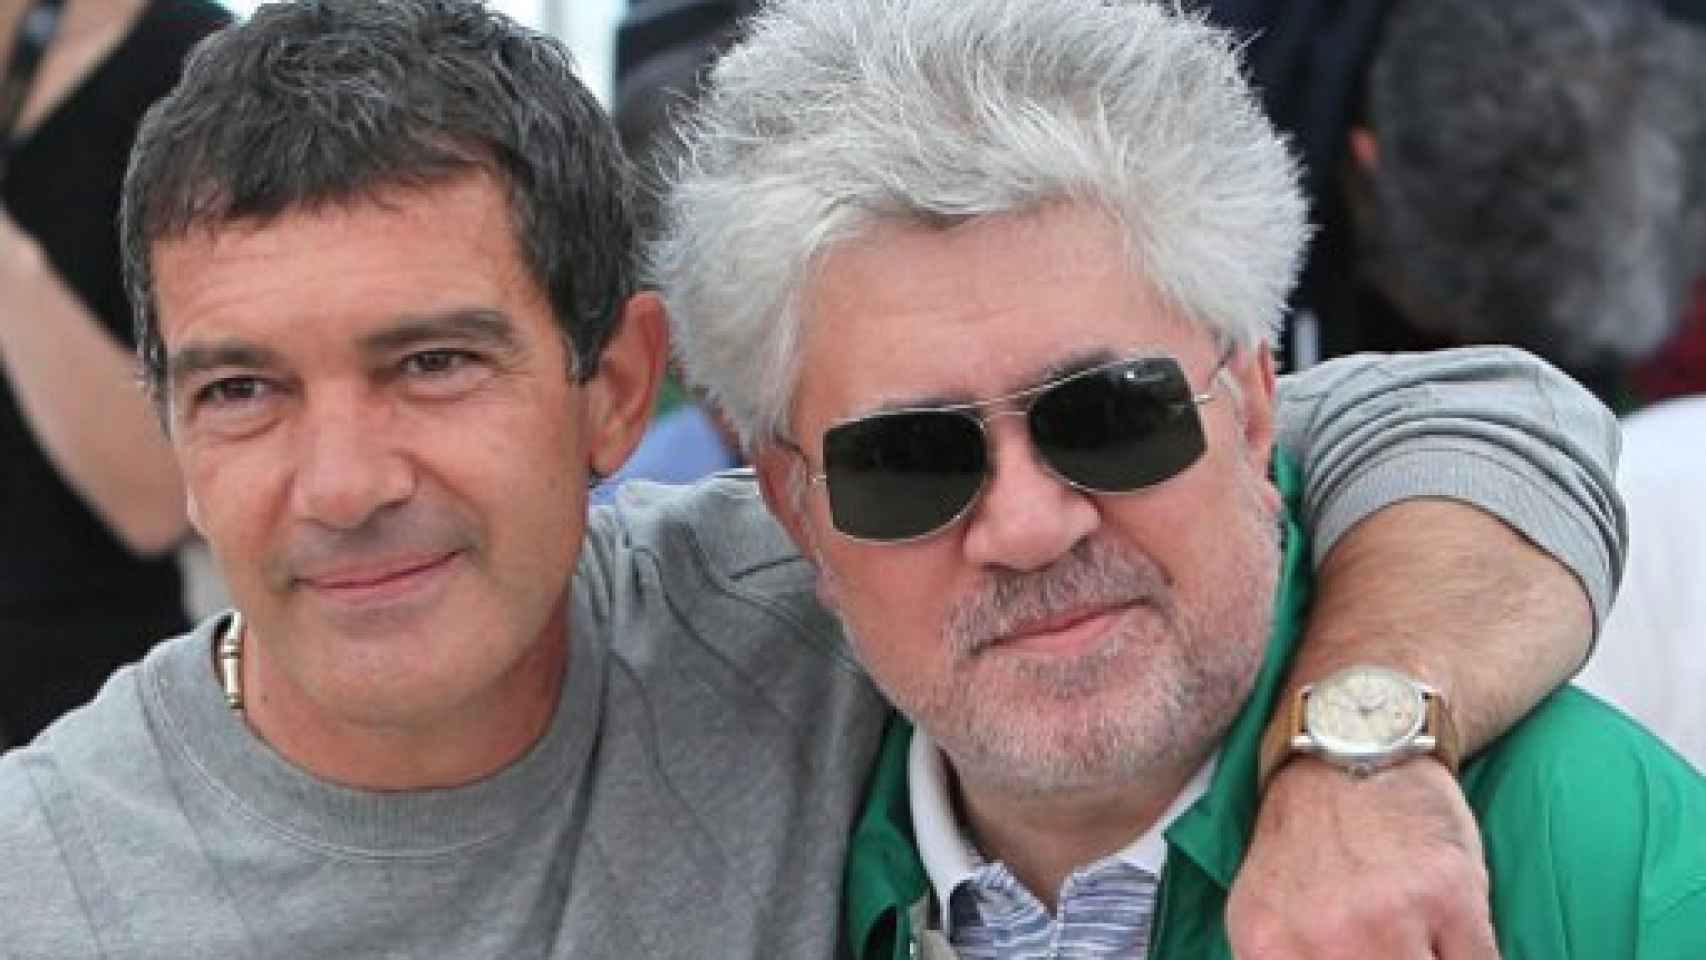 Image: Pedro Almodóvar competirá en Cannes con Dolor y Gloria